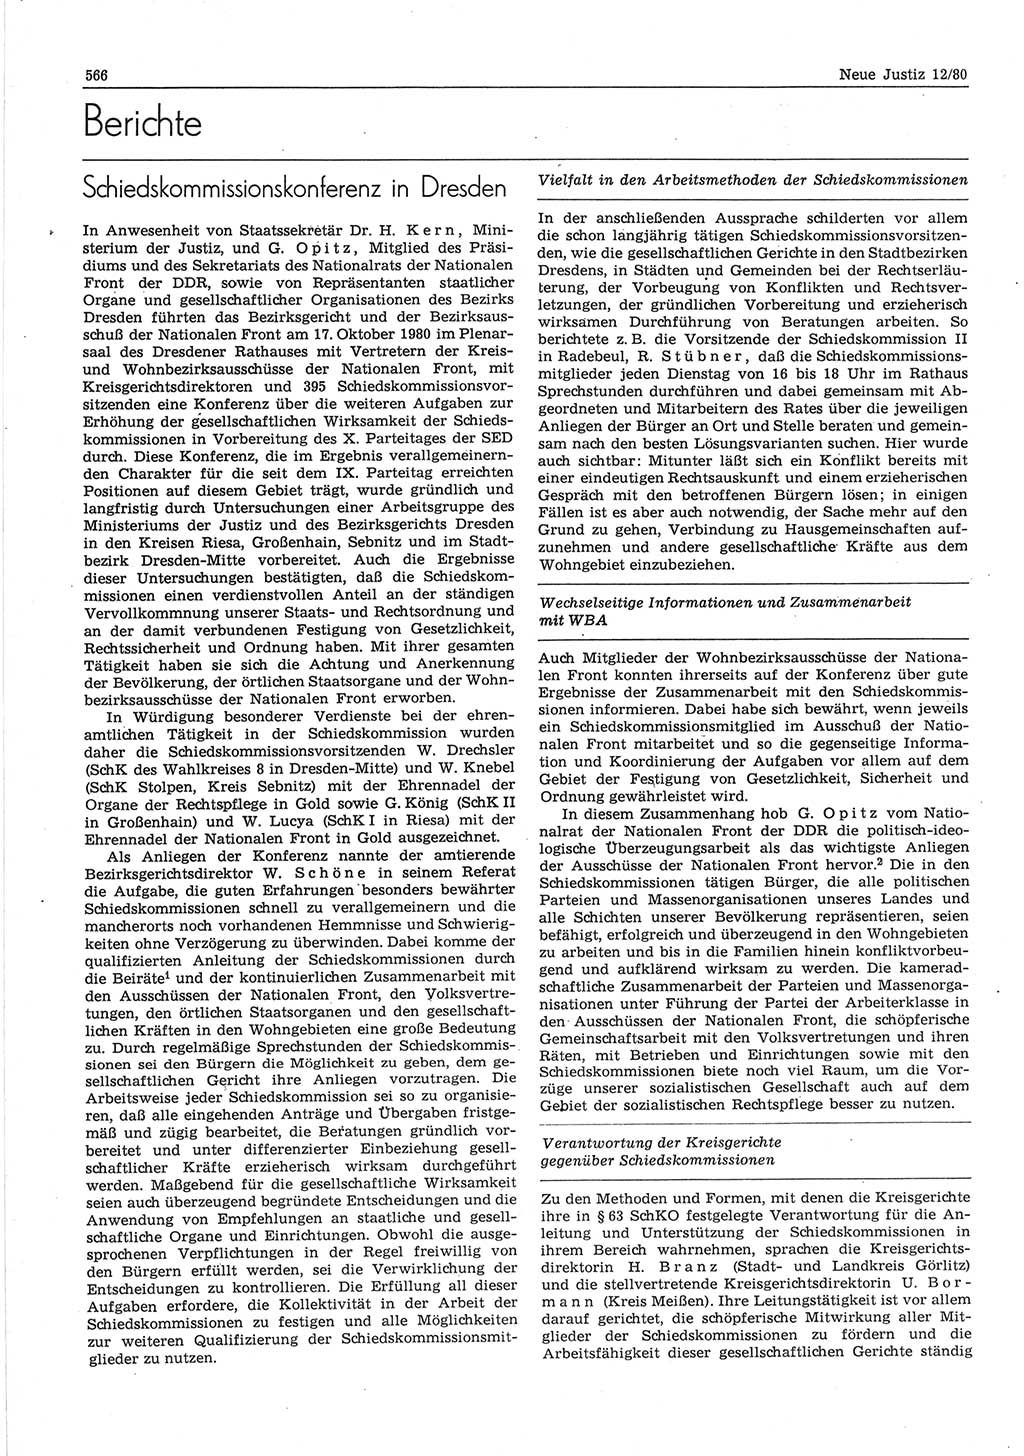 Neue Justiz (NJ), Zeitschrift für sozialistisches Recht und Gesetzlichkeit [Deutsche Demokratische Republik (DDR)], 34. Jahrgang 1980, Seite 566 (NJ DDR 1980, S. 566)